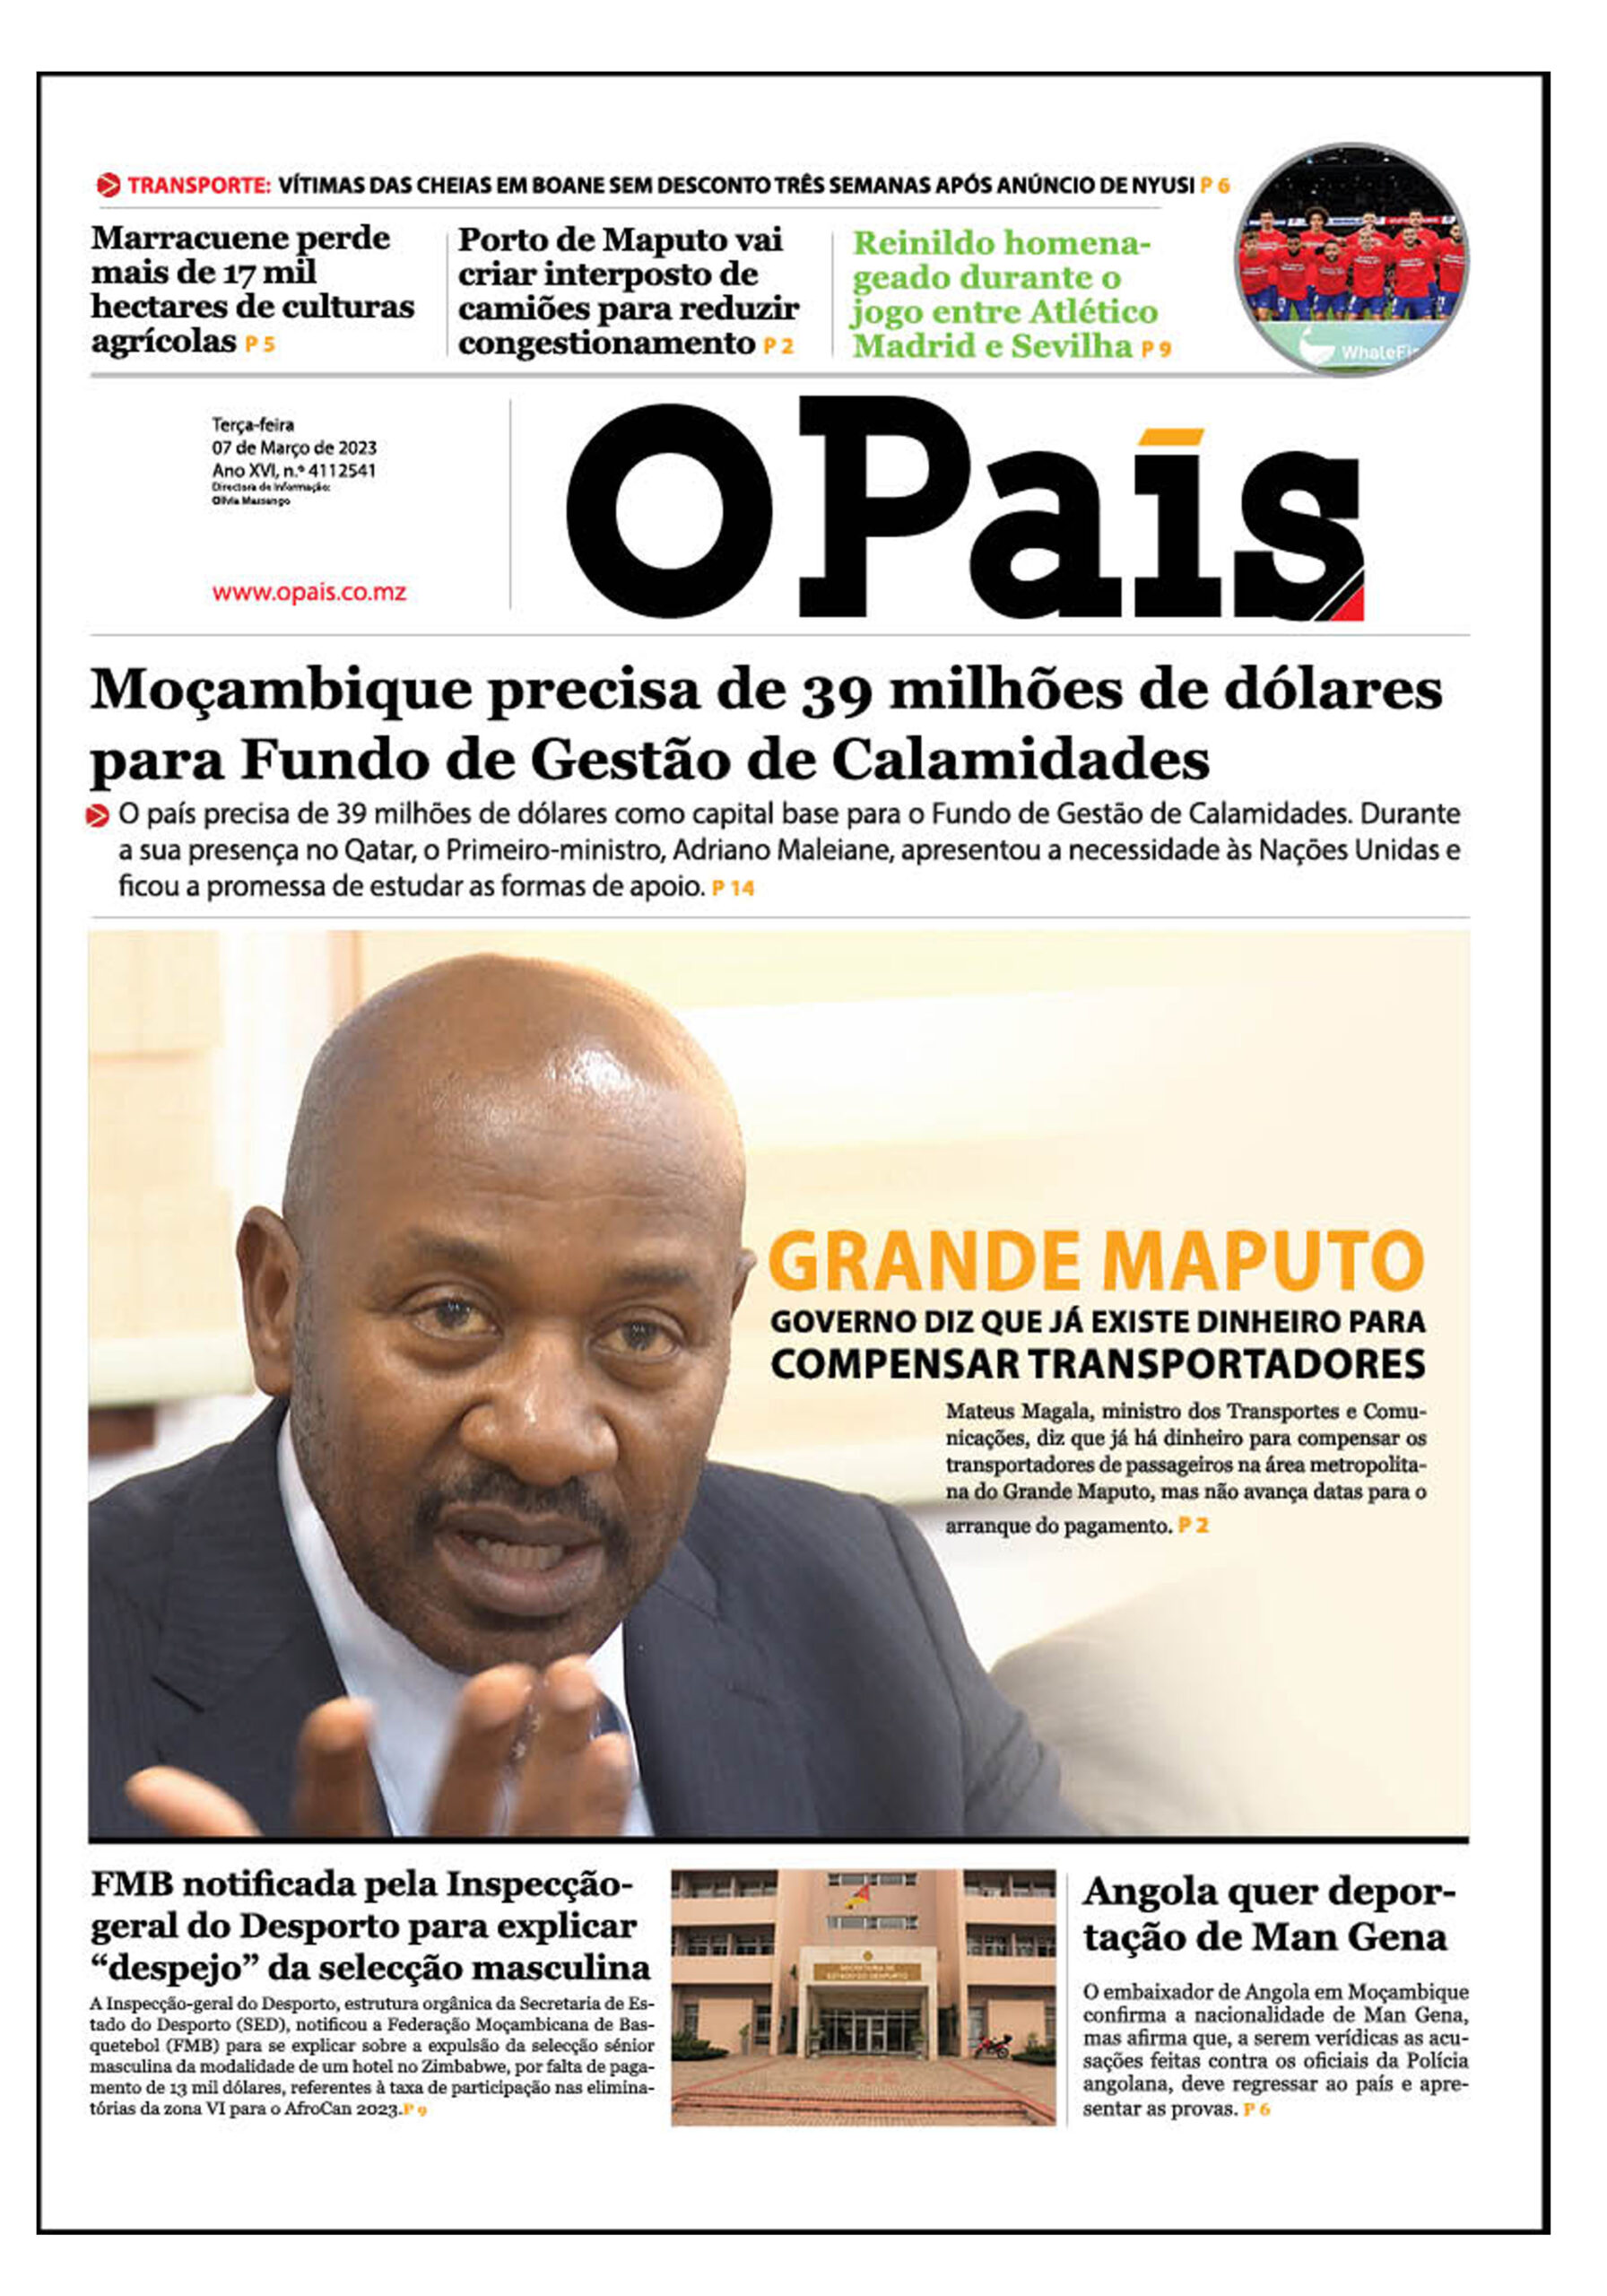 Capa Do Jornal Diário 07 03 2023 O País A Verdade Como Notícia